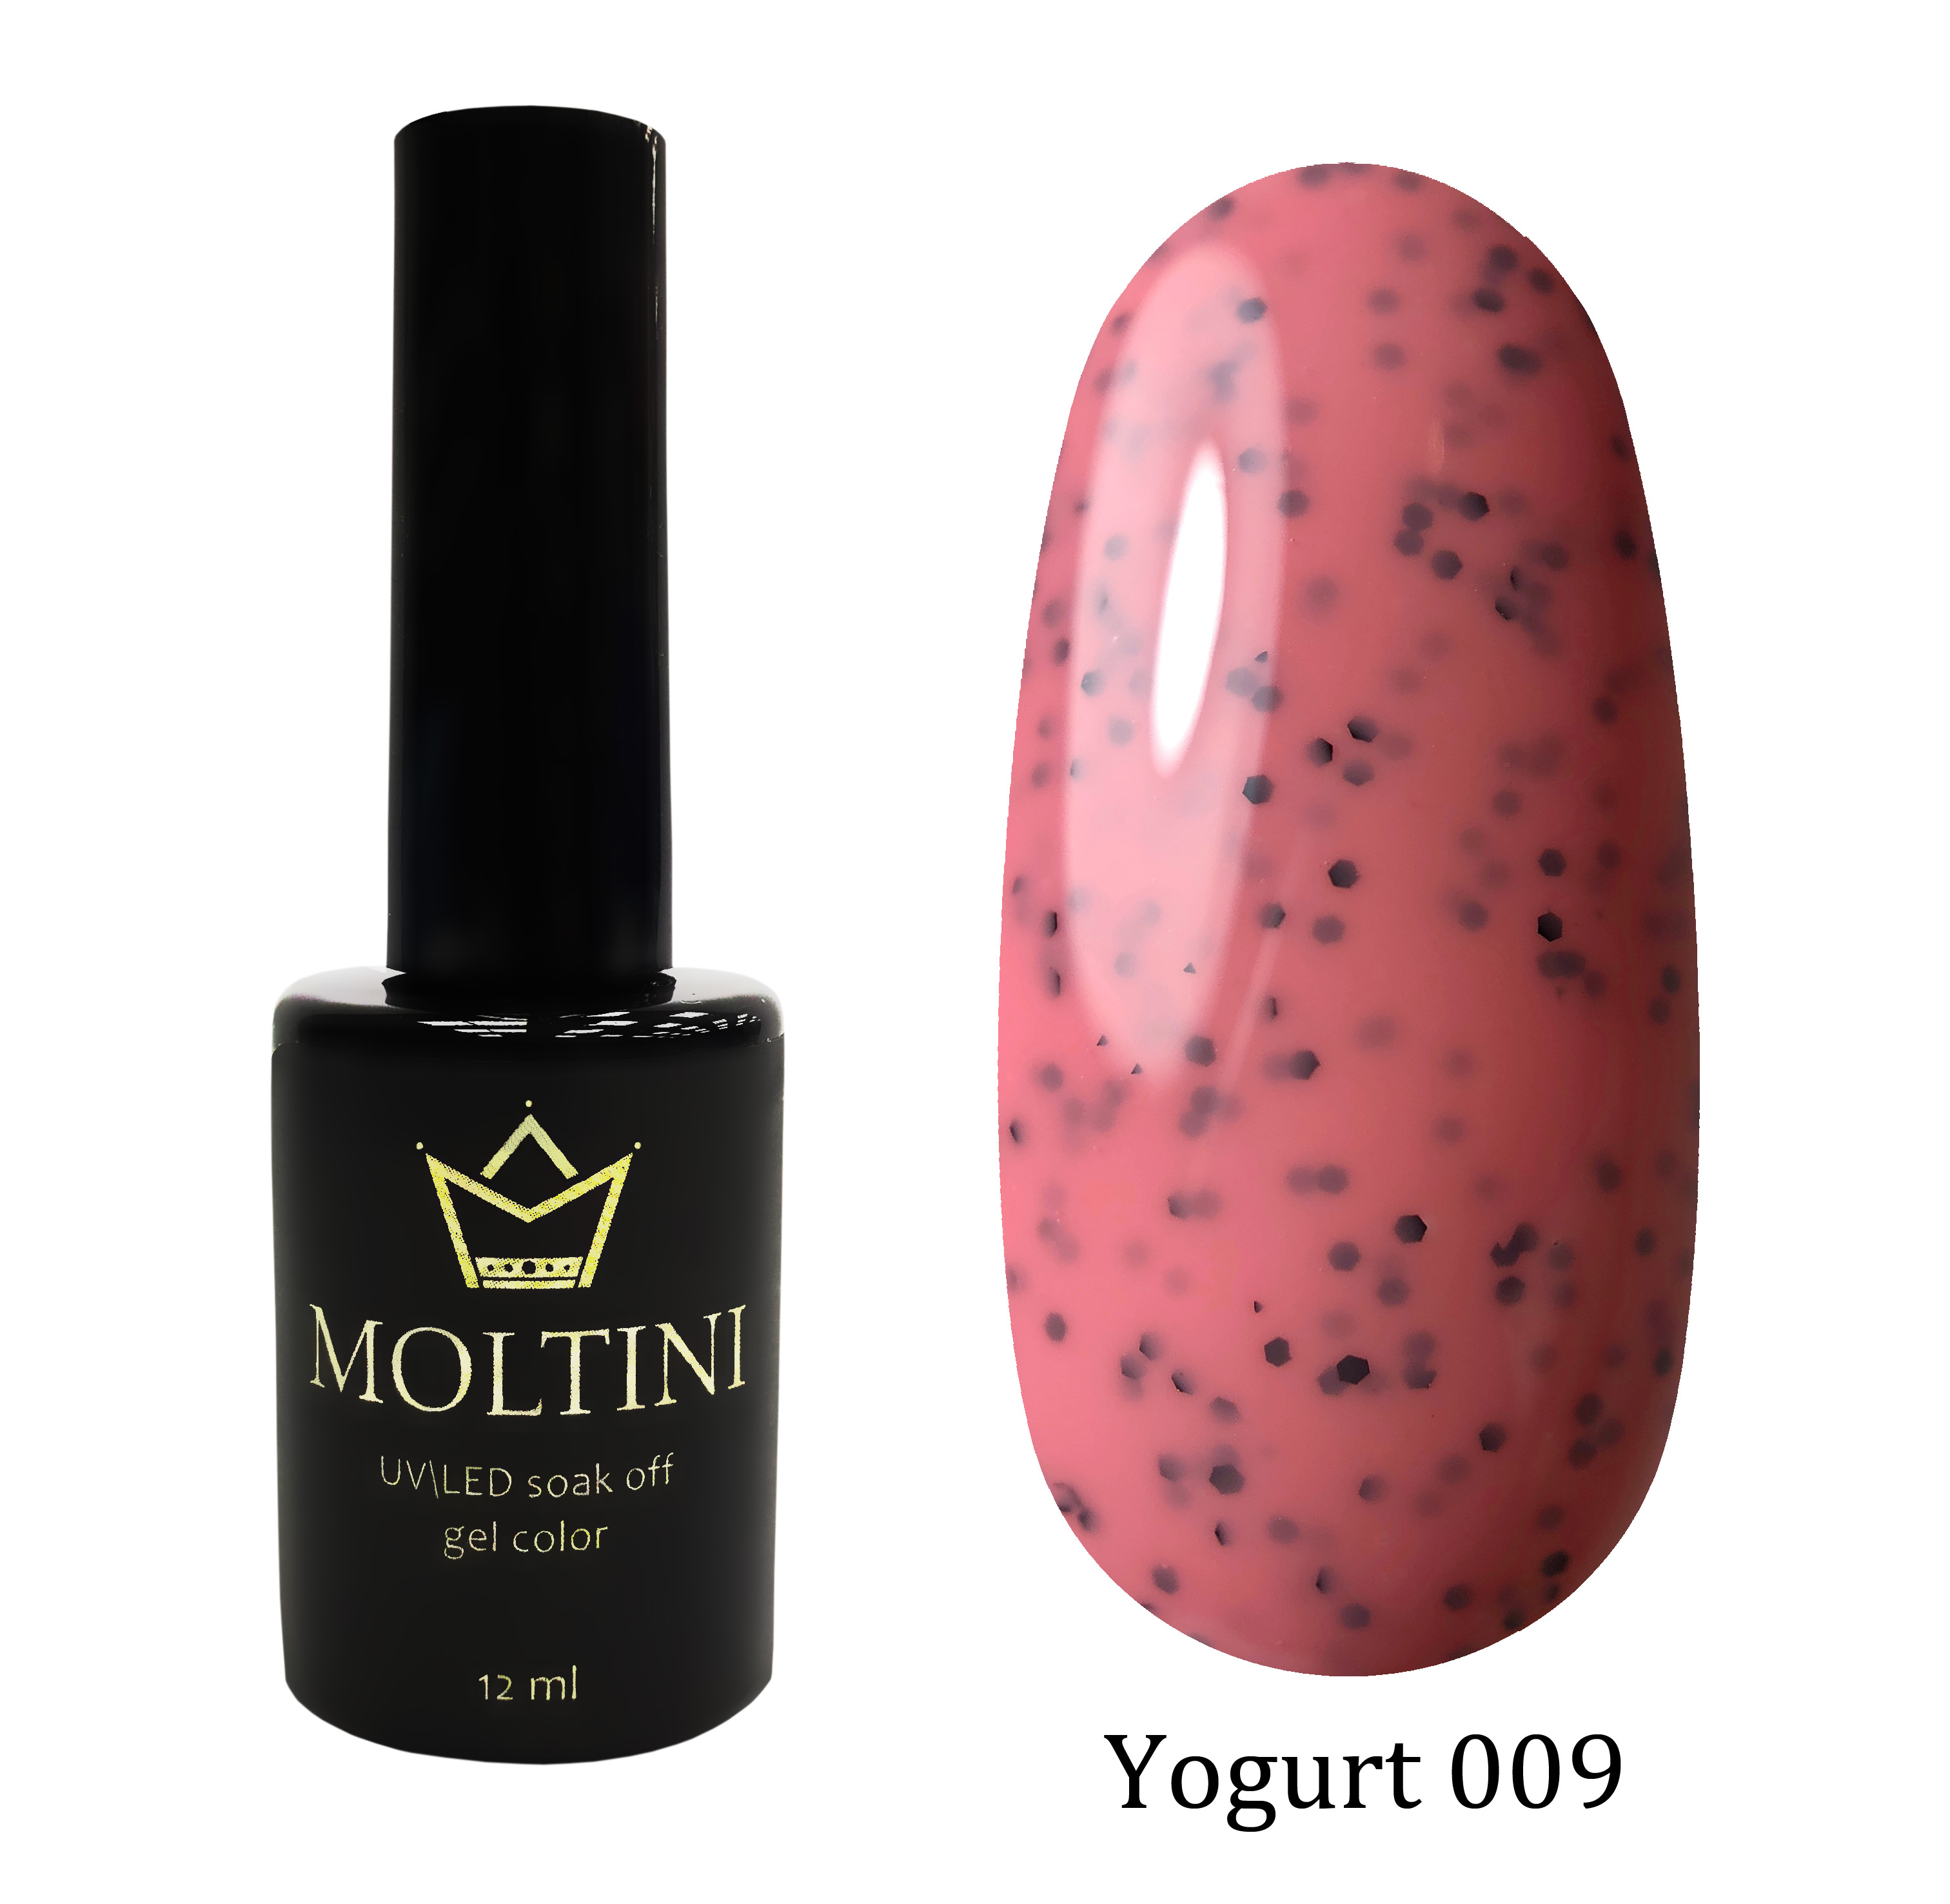 Moltini цветной гель-лак Yogurt 009, 12 мл